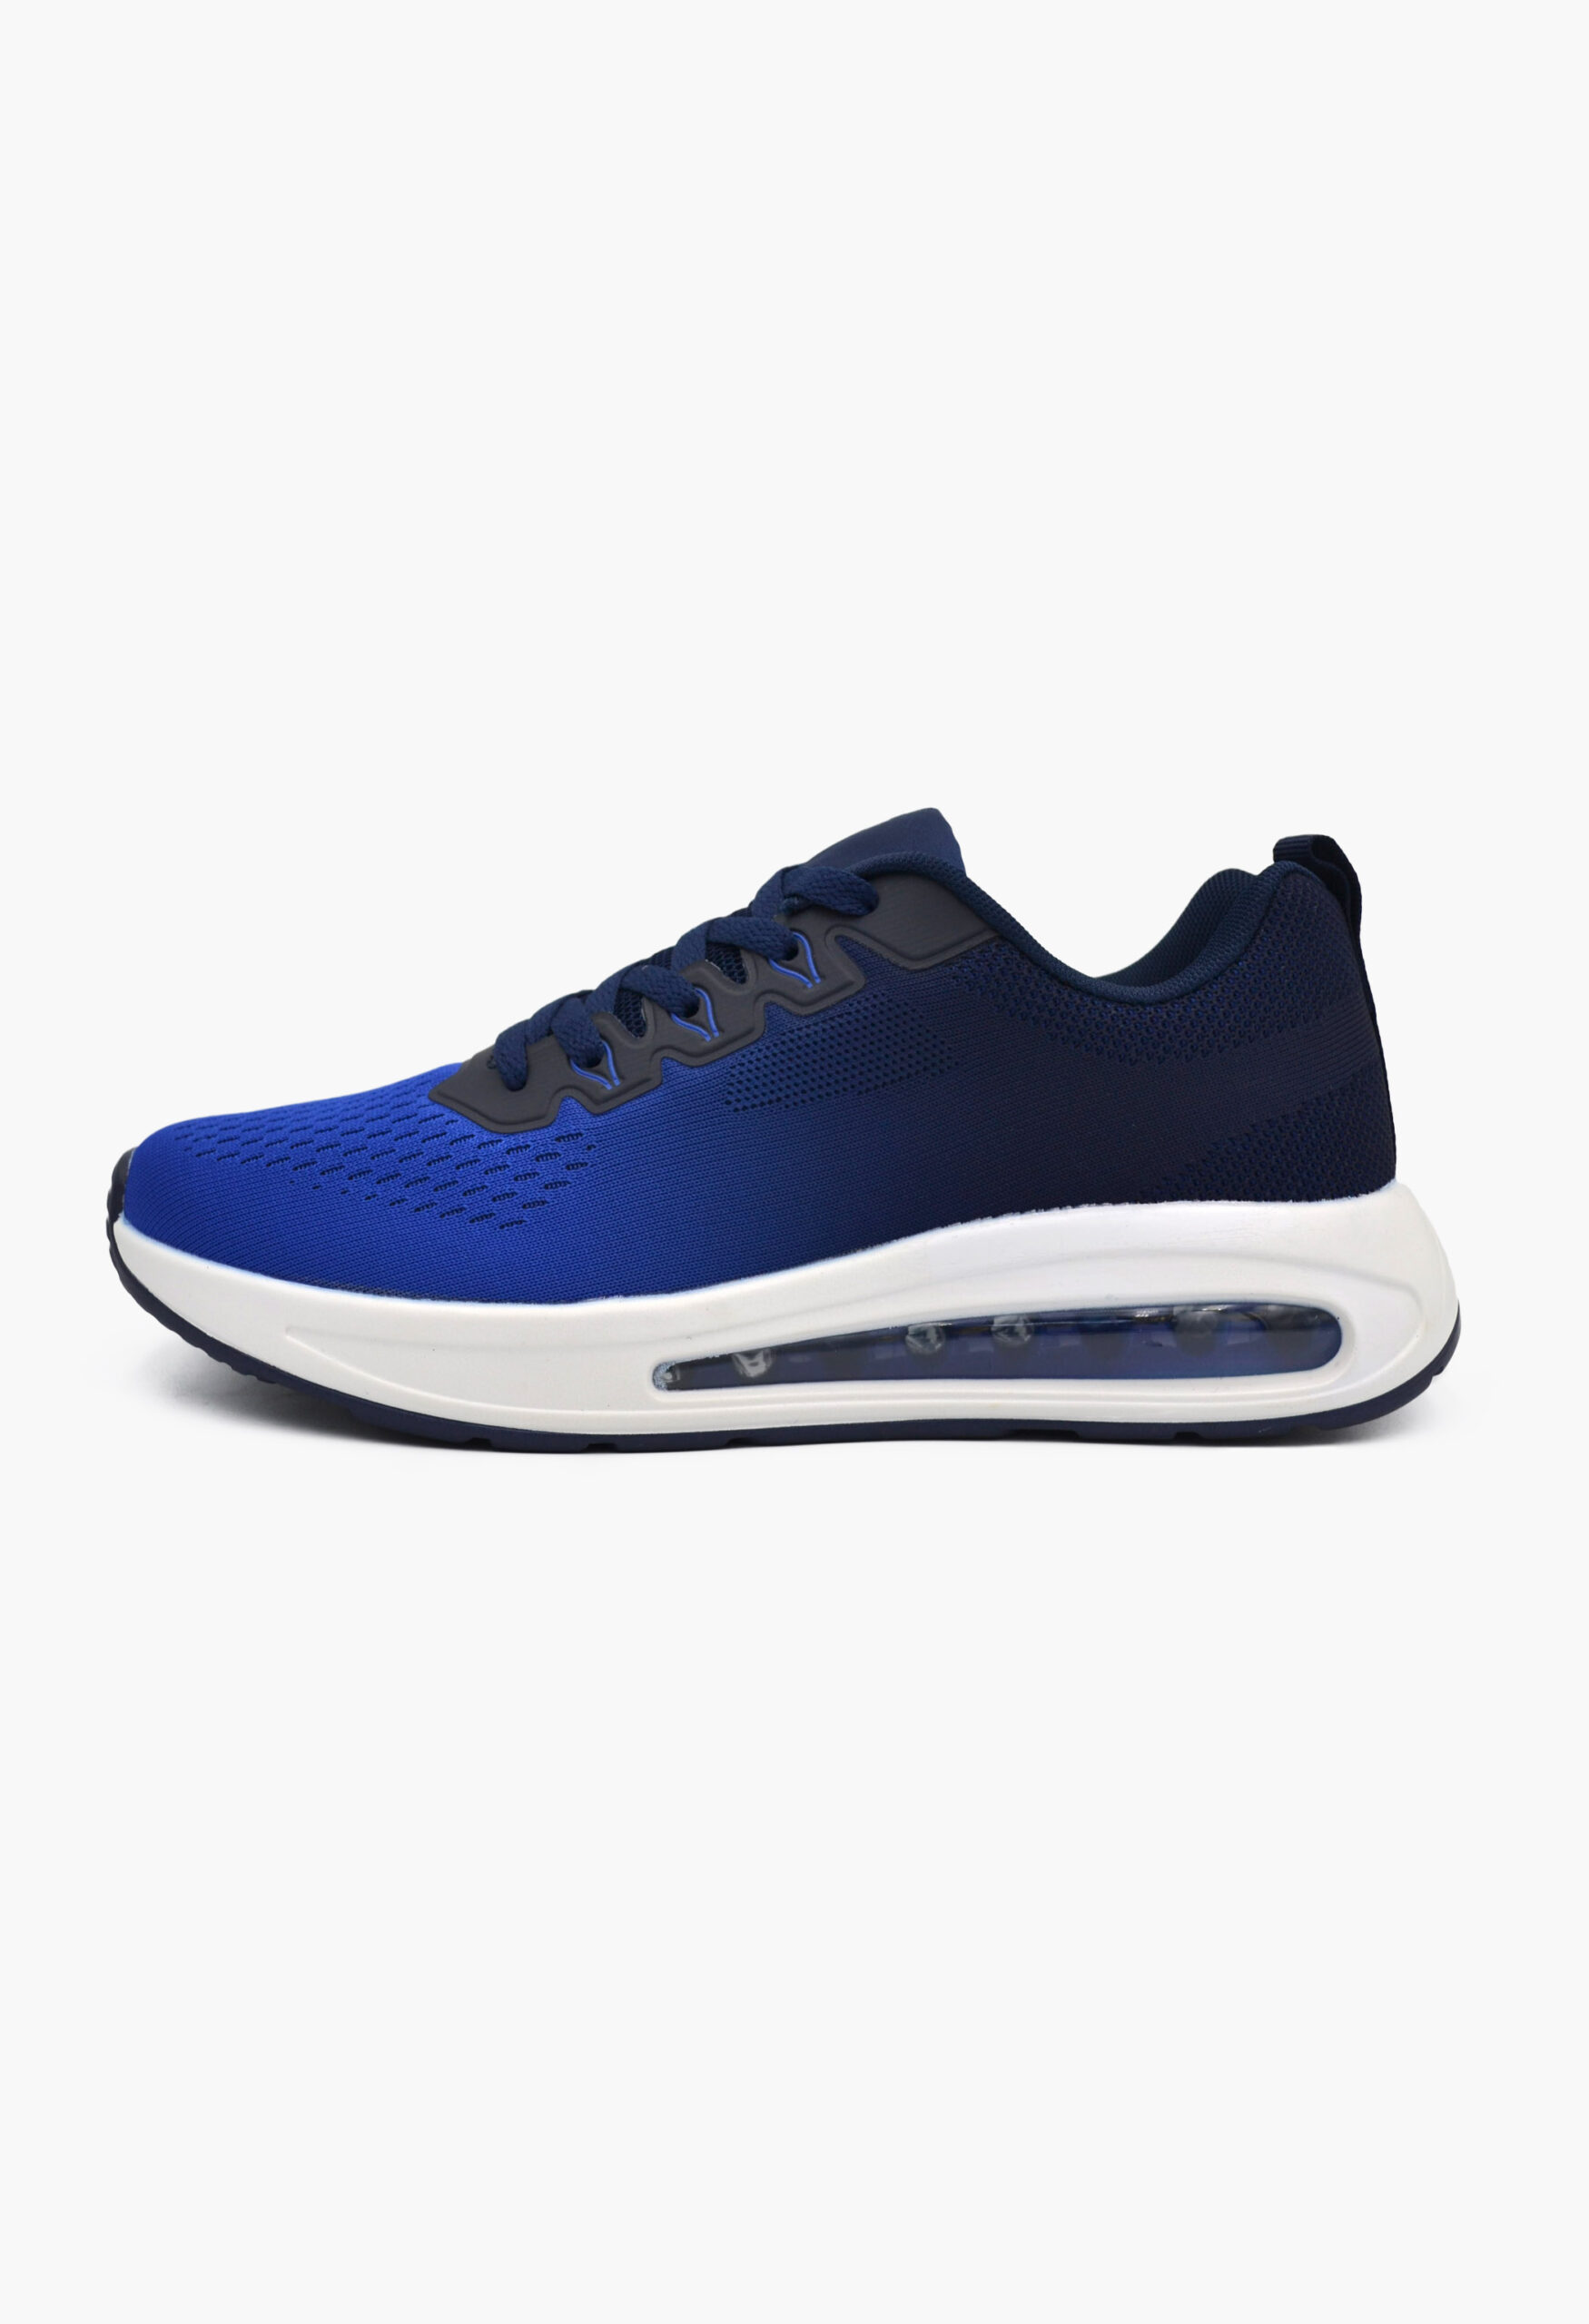 Ανδρικά Αθλητικά Παπούτσια για Τρέξιμο Μπλε / U1227-10-blue/navy ΑΘΛΗΤΙΚΑ & SNEAKERS joya.gr